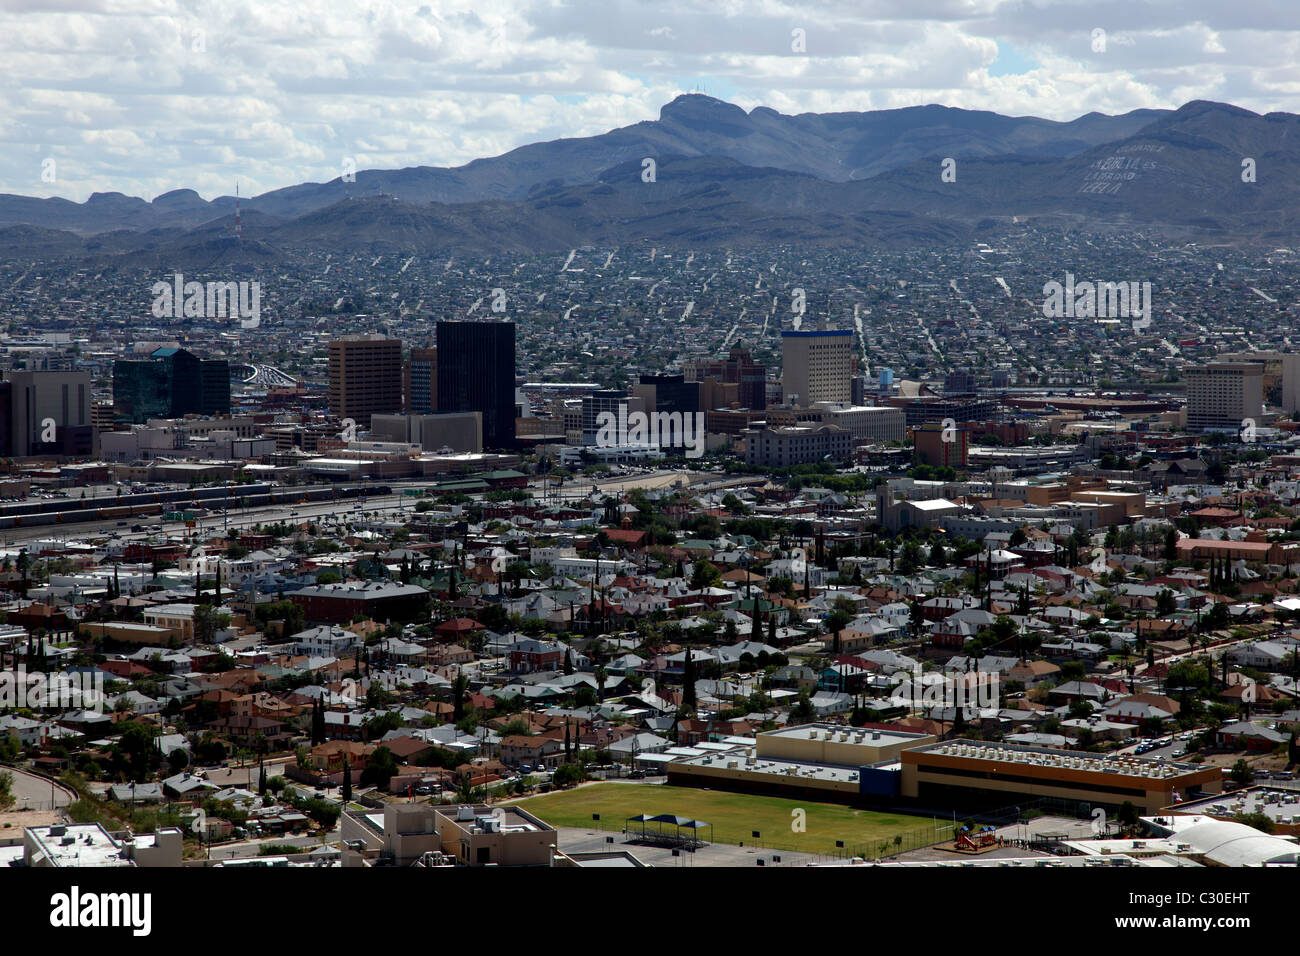 Il centro cittadino di El Paso, Texas da una scenografica si affacciano. Juarez, Messico è appena al di là degli edifici della città. Foto Stock